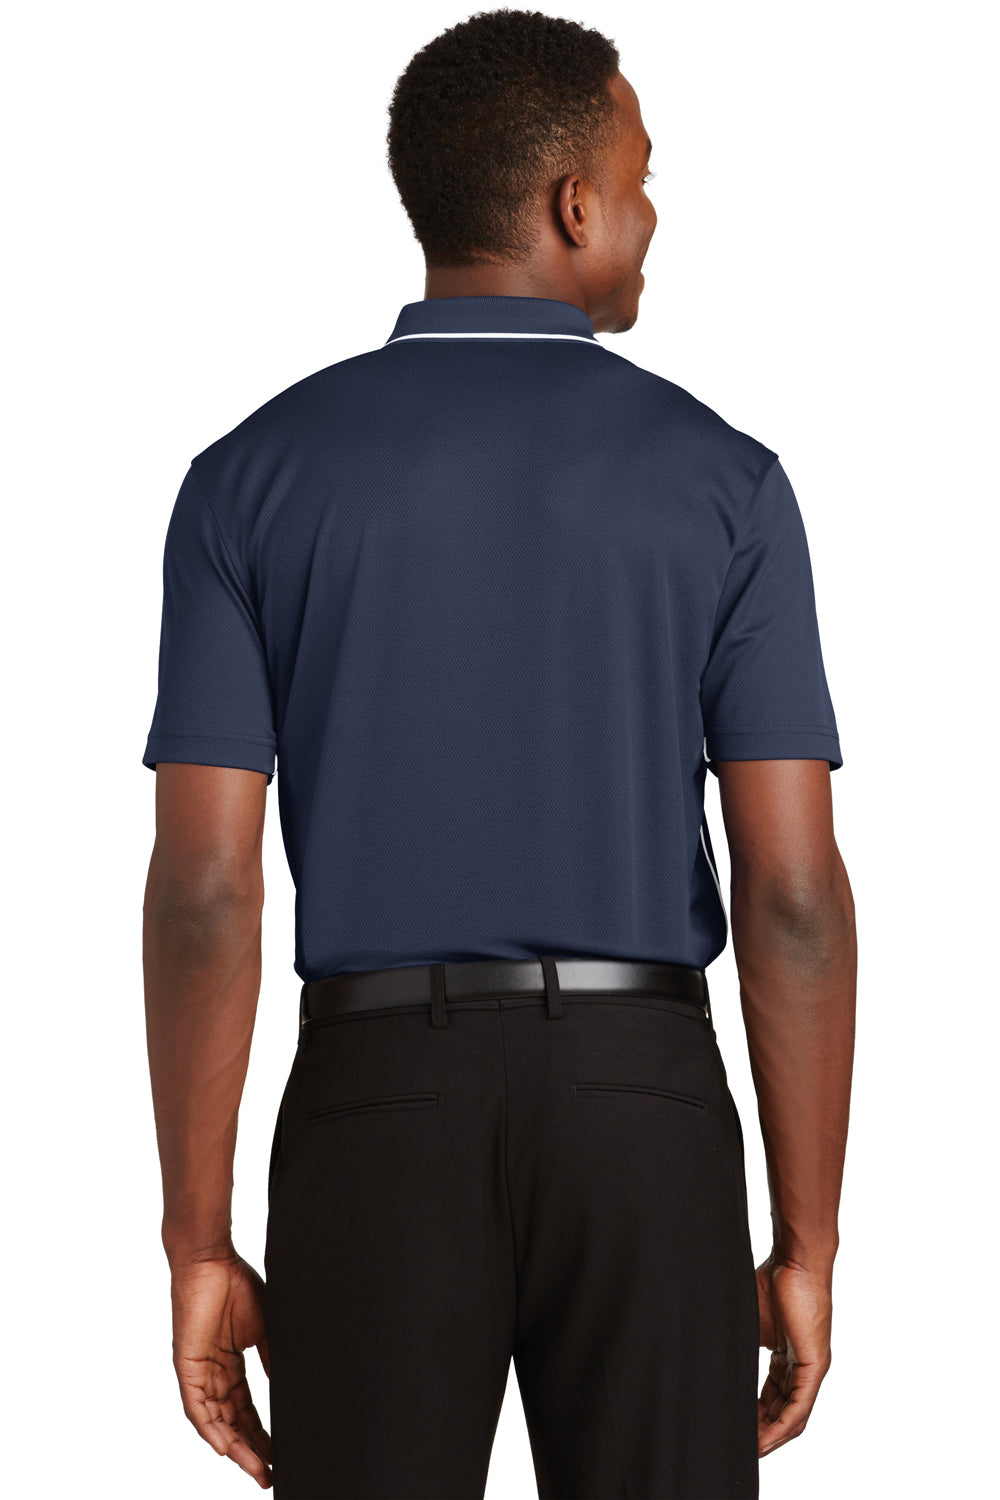 Sport-Tek K467 Mens Dri-Mesh Moisture Wicking Short Sleeve Polo Shirt Navy Blue Back